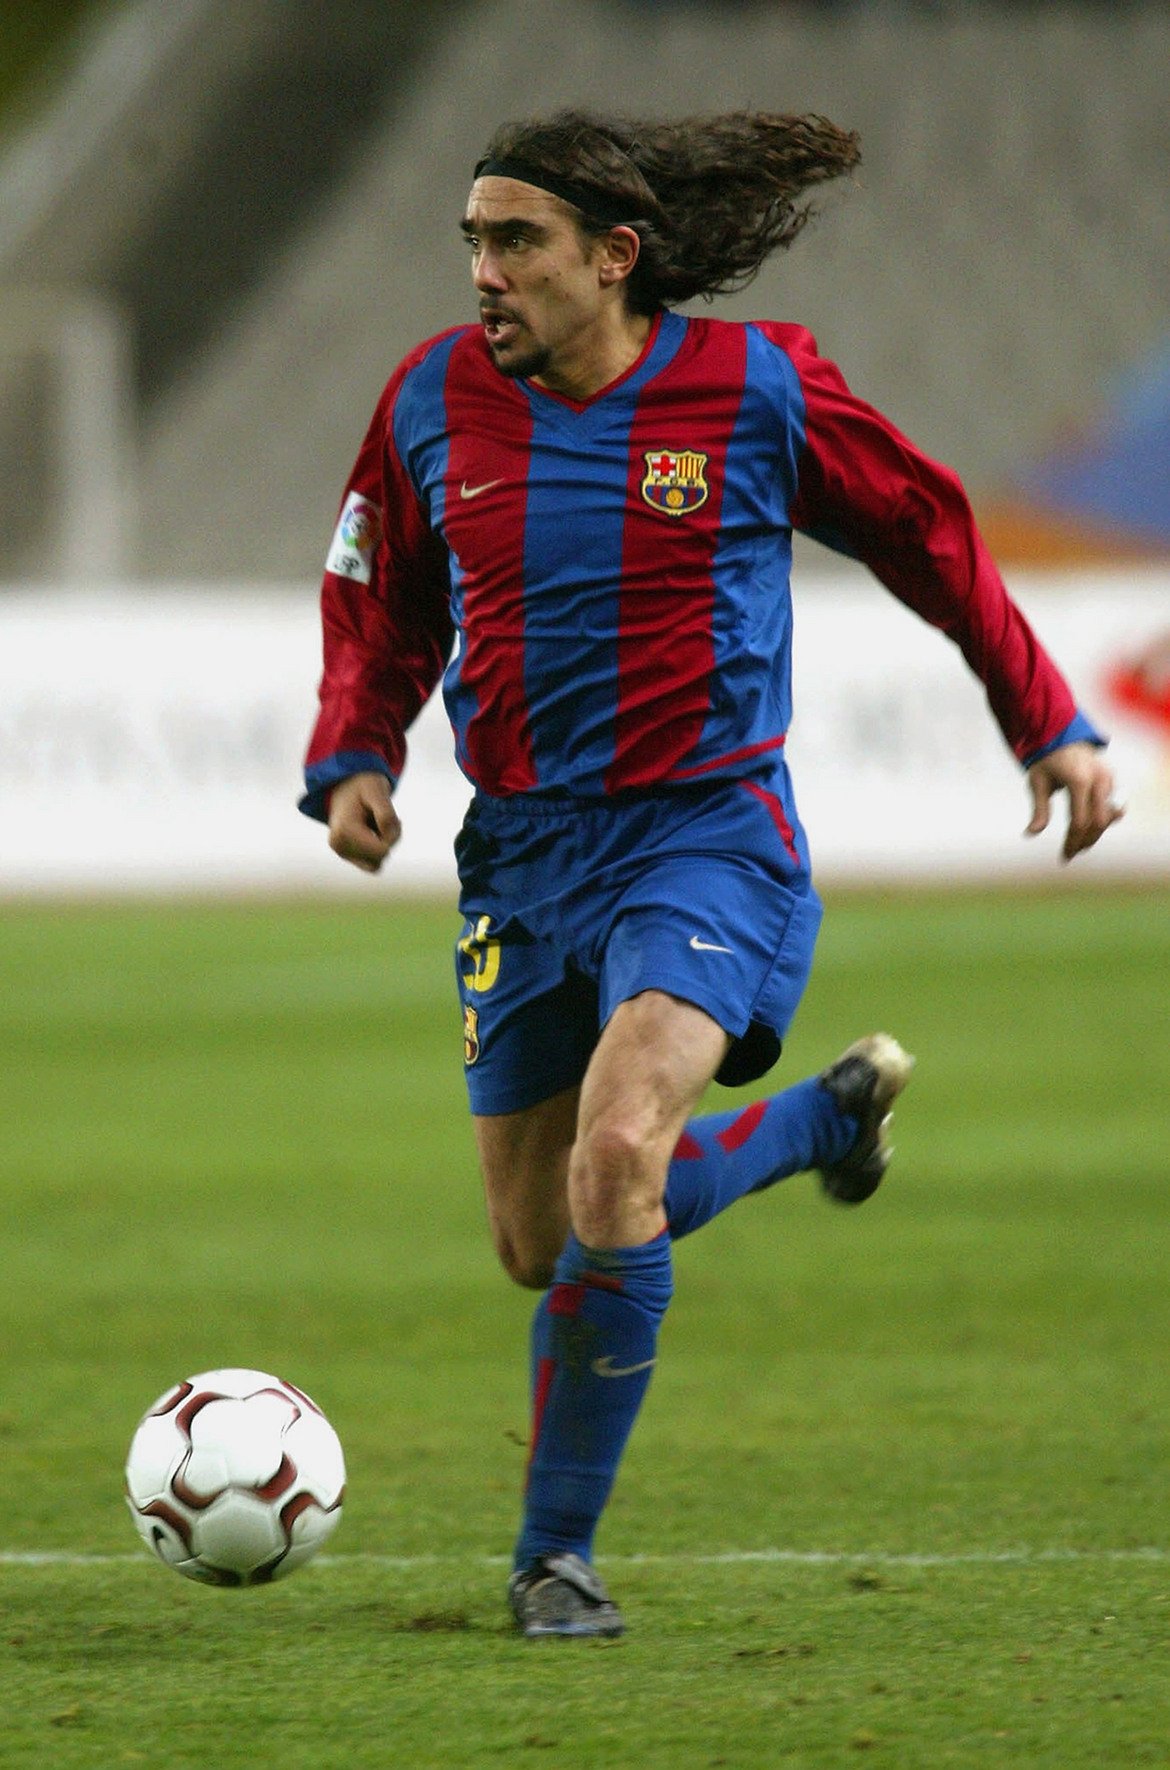 Хуан Пабло Сорин
Аржентинецът премина през много отбори в кариерата си. Първият му досег с европейския футбол бе под наем с екипа на Ювентус през сезон 1995/96, след което Ривър Плейт го продаде на Крузейто за 5 млн. евро. Бе отдаван под наем в Лацио, Барселона и ПСЖ за по един сезон, след което във Виляреал и Хамбургер за по сезон и половина и два, съответно. Отказа се през 2009-а в Крузейро.